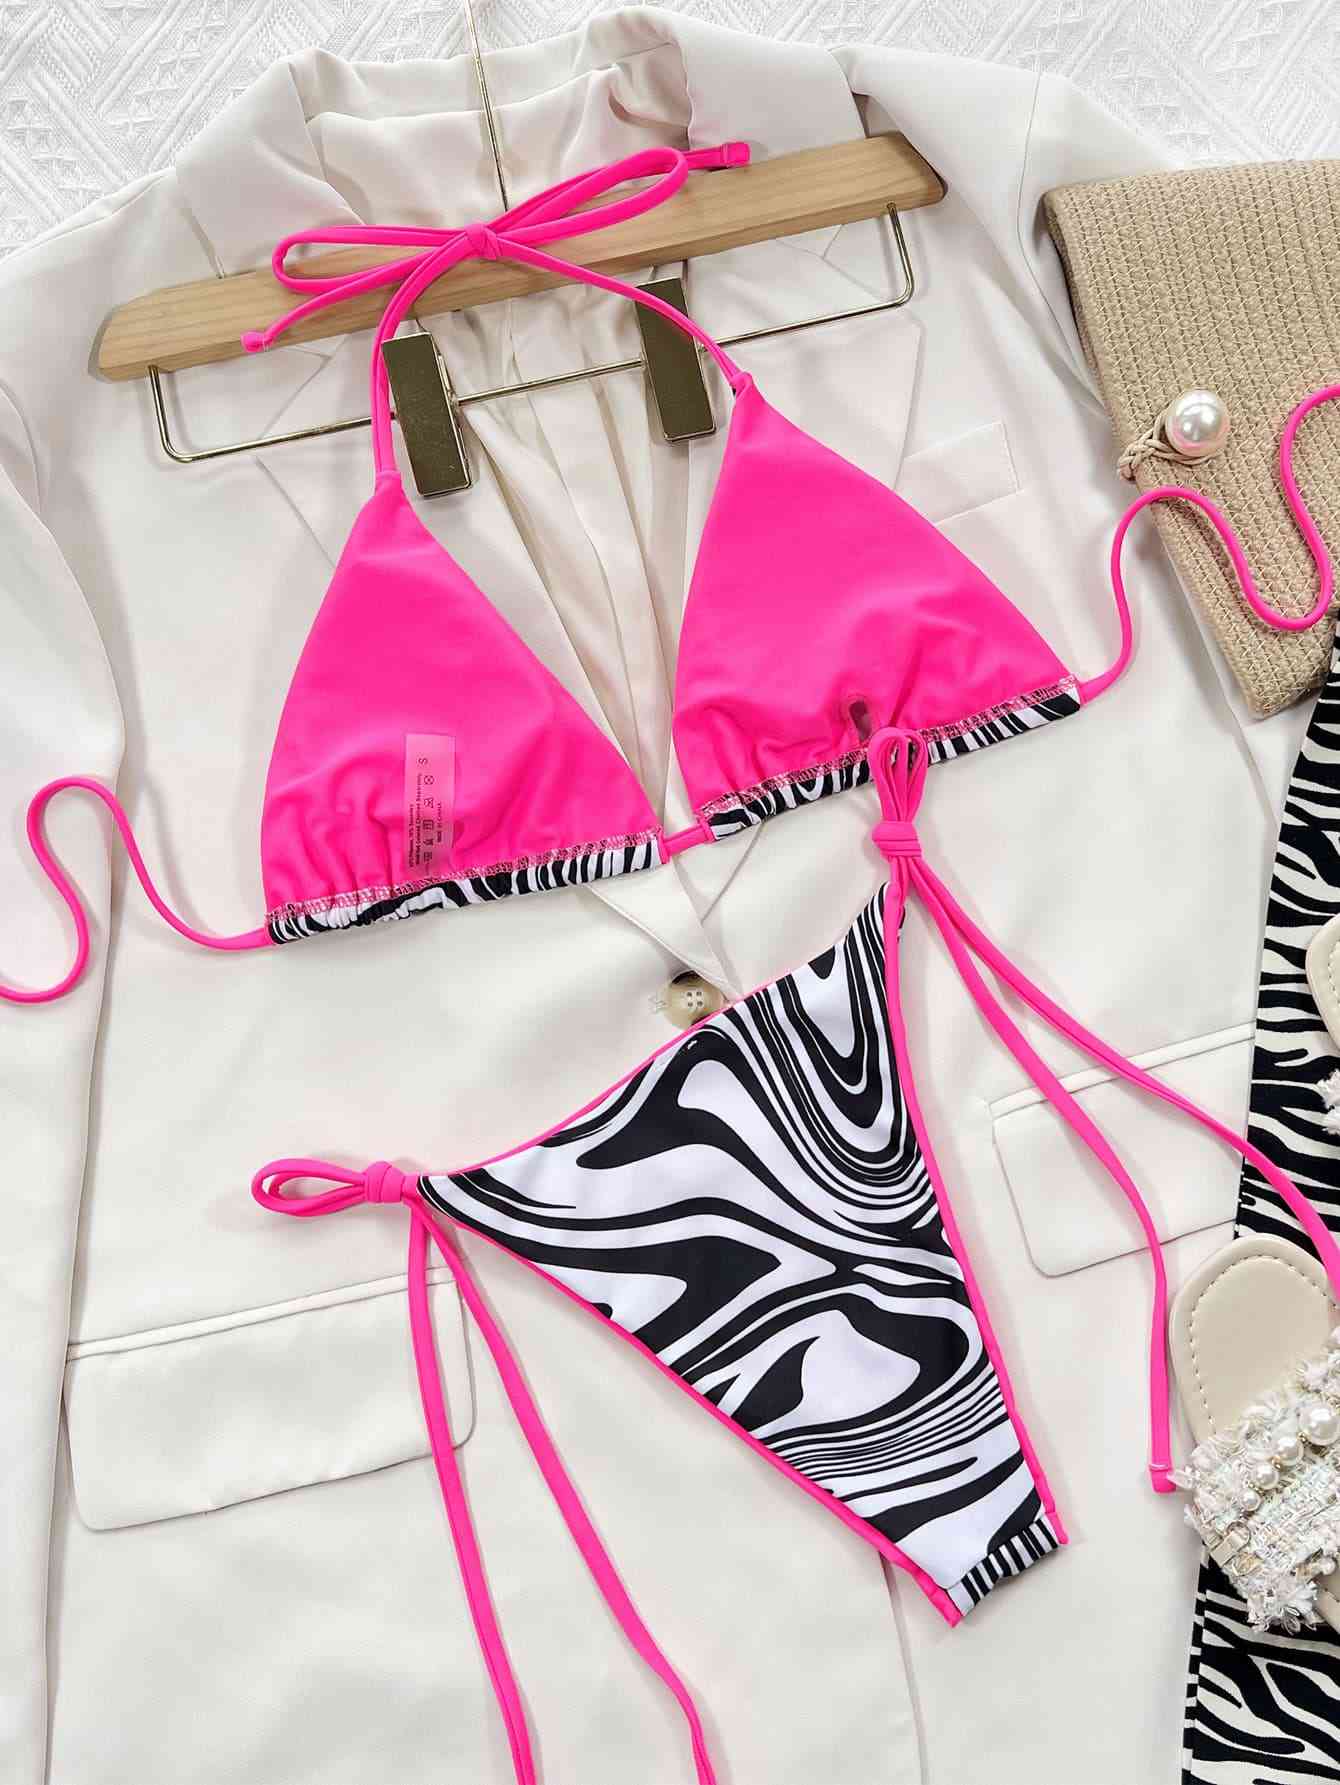 Zebra Print Halter Neck Tie Side Bikini in Size S, M, or L